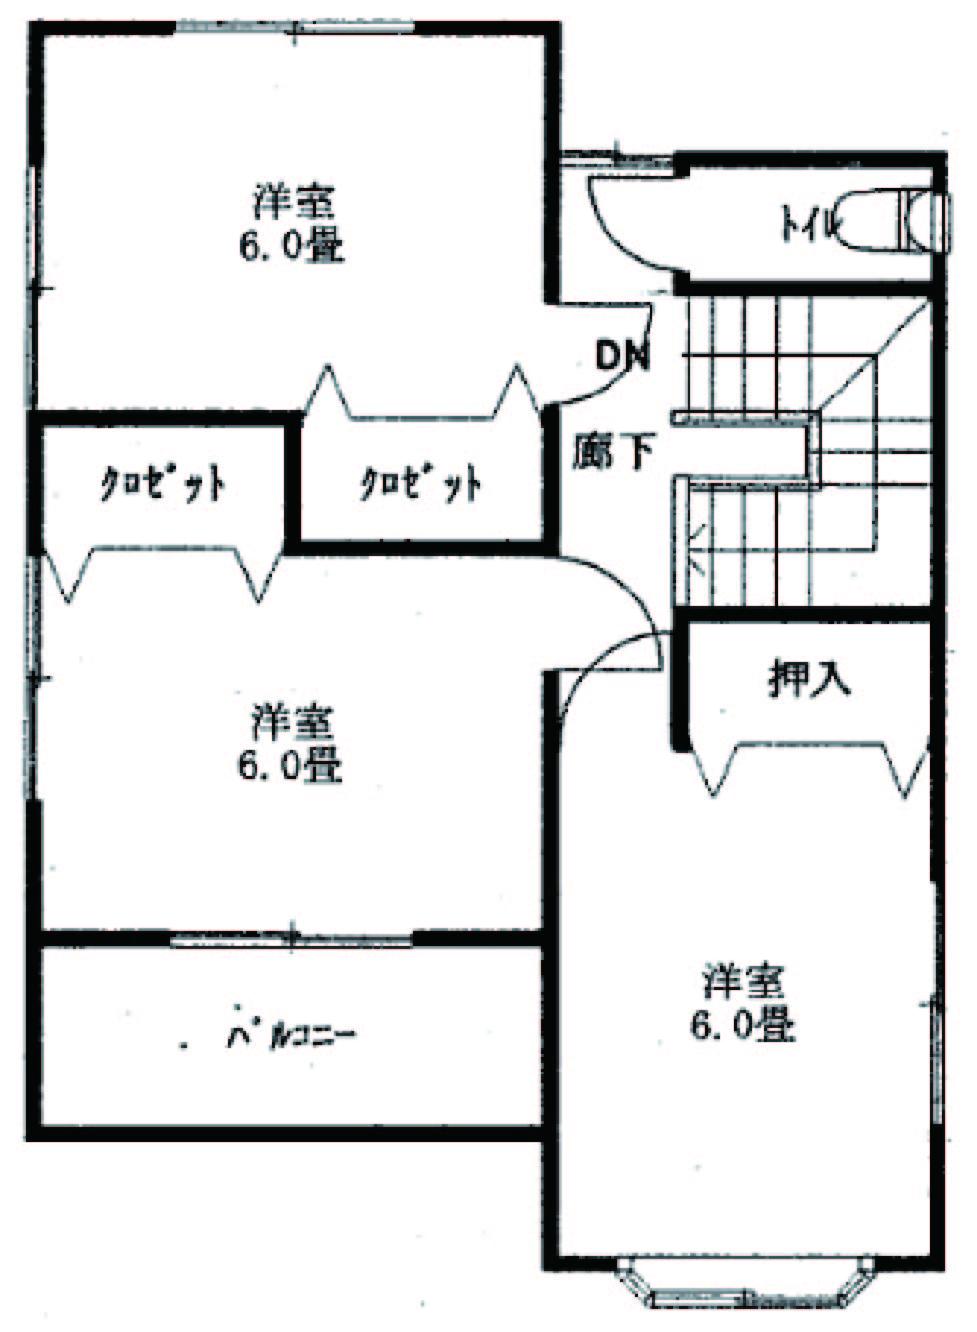 Floor plan. 25,800,000 yen, 4LDK, Land area 166.16 sq m , Building area 105.57 sq m 2 floor